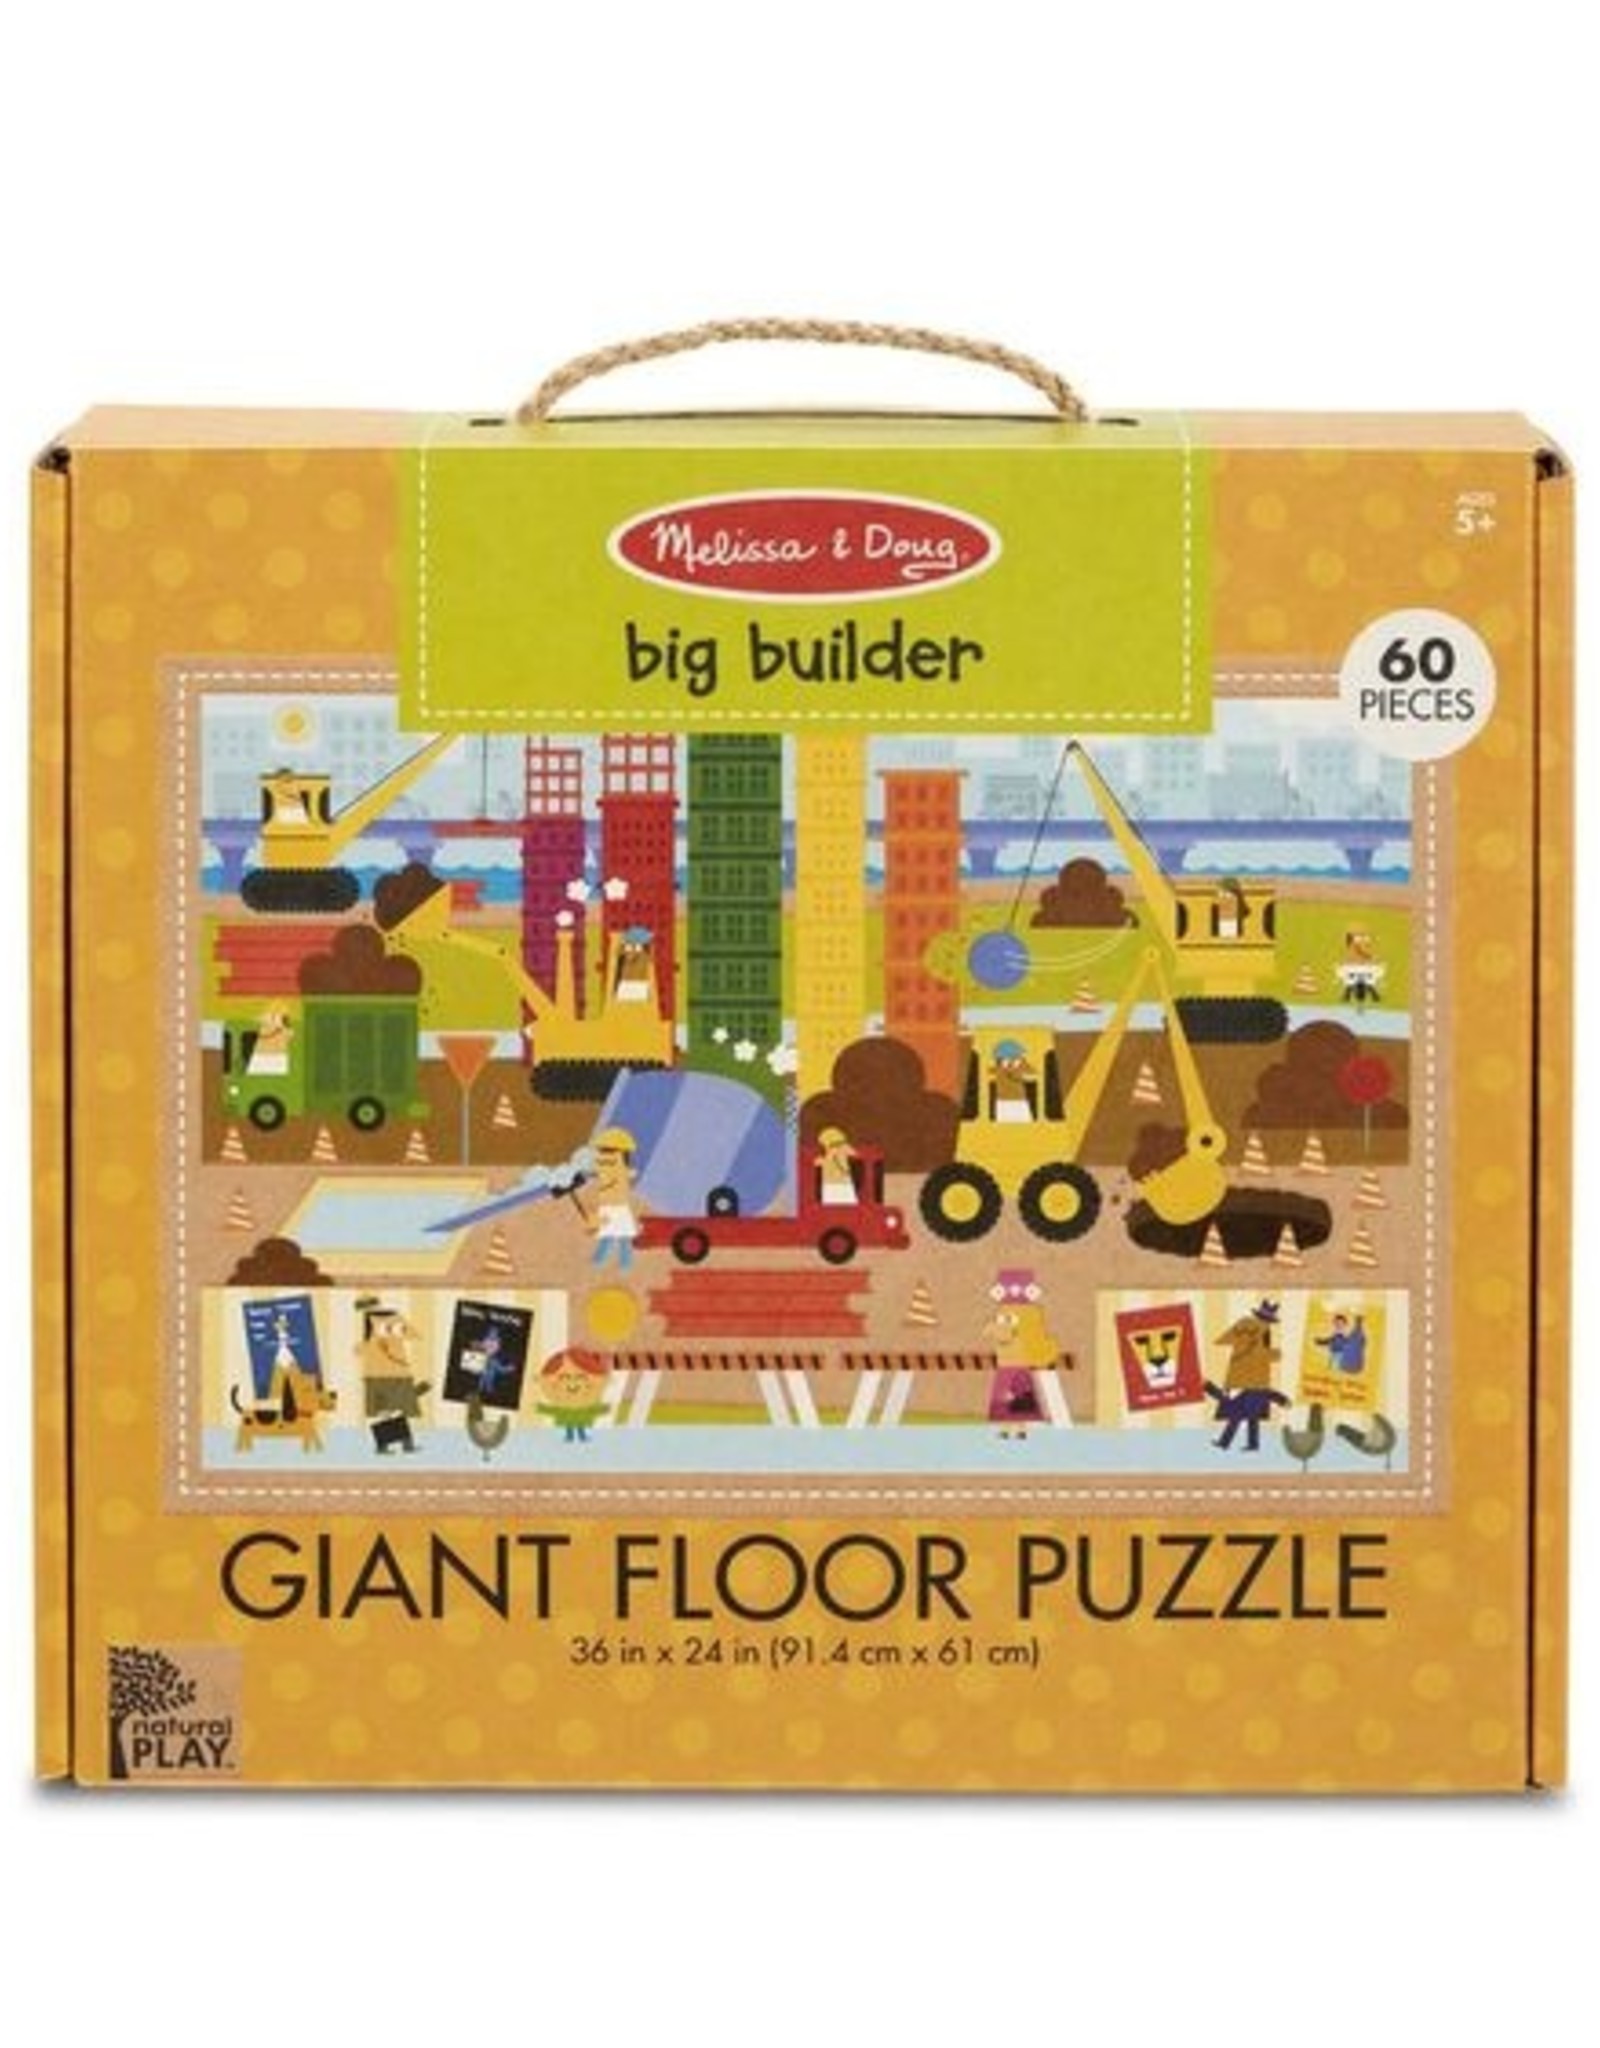 NP Giant Floor Puzzle - Big Builder